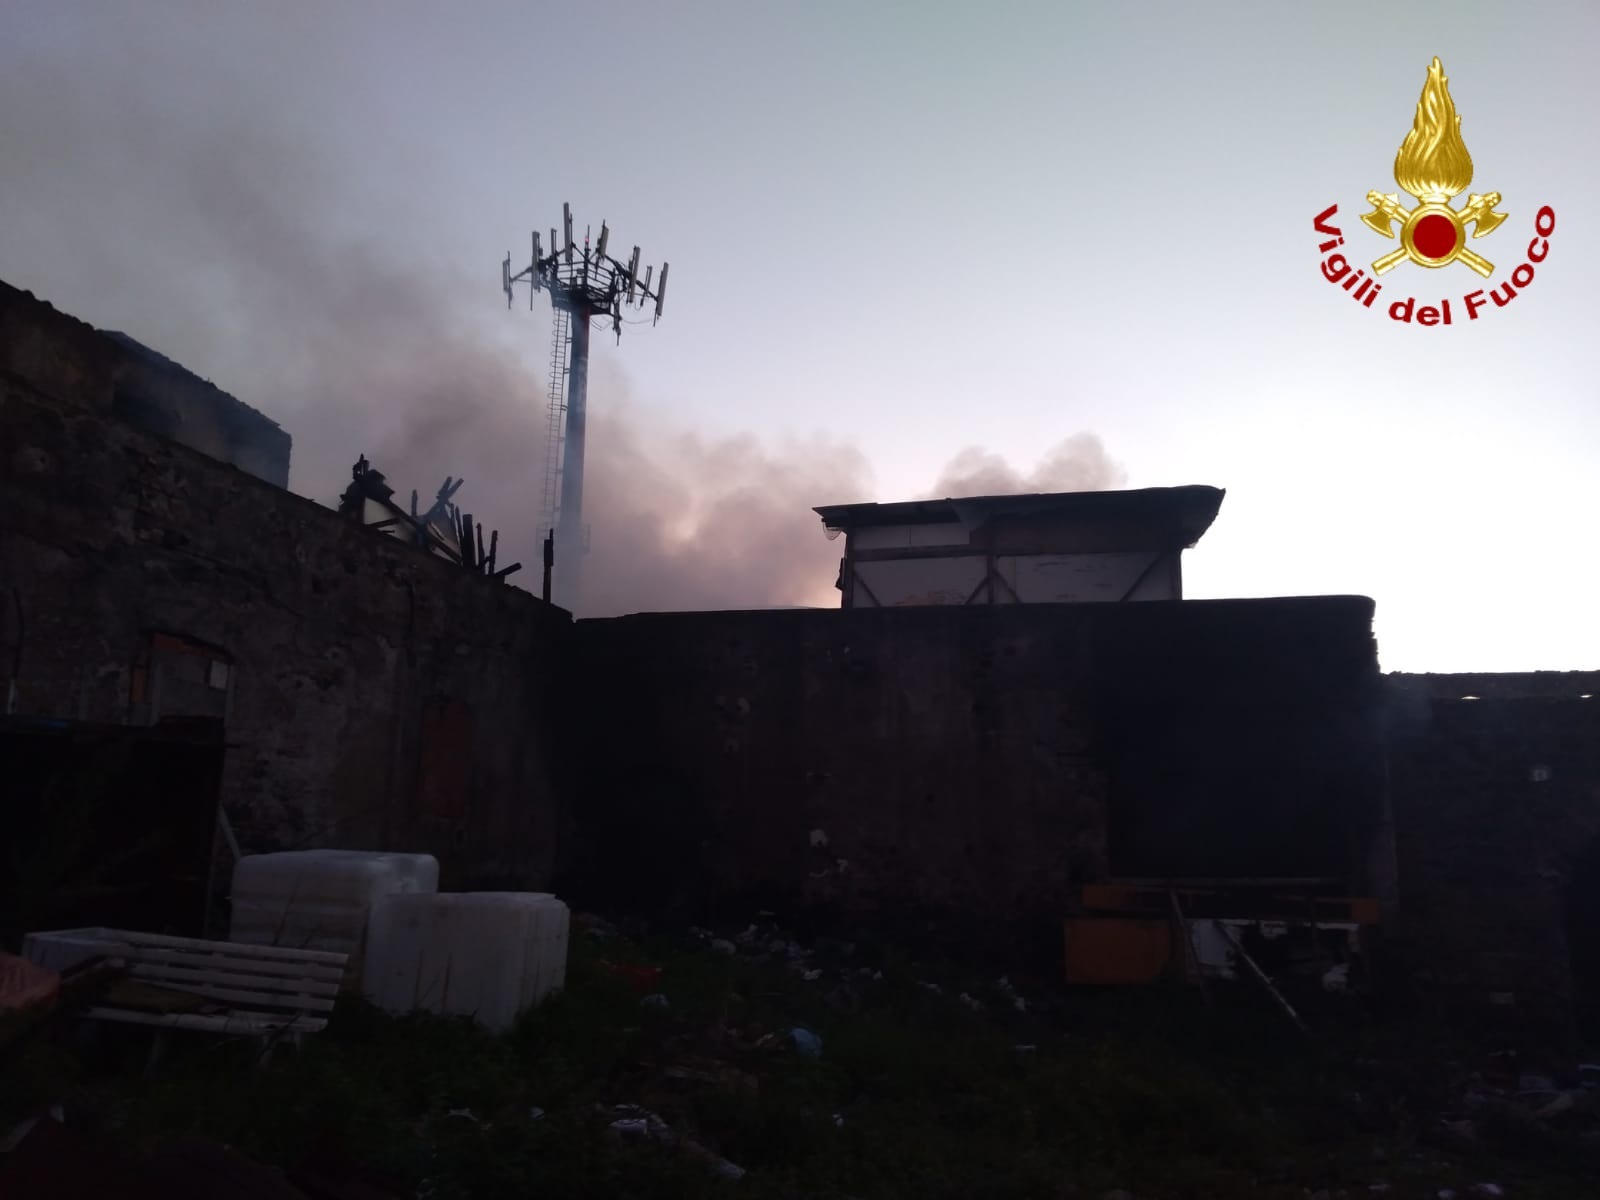 Incendio a San Cristoforo: rifiuti e materiale vario in fiamme in un capannone abbandonato – FOTO e VIDEO